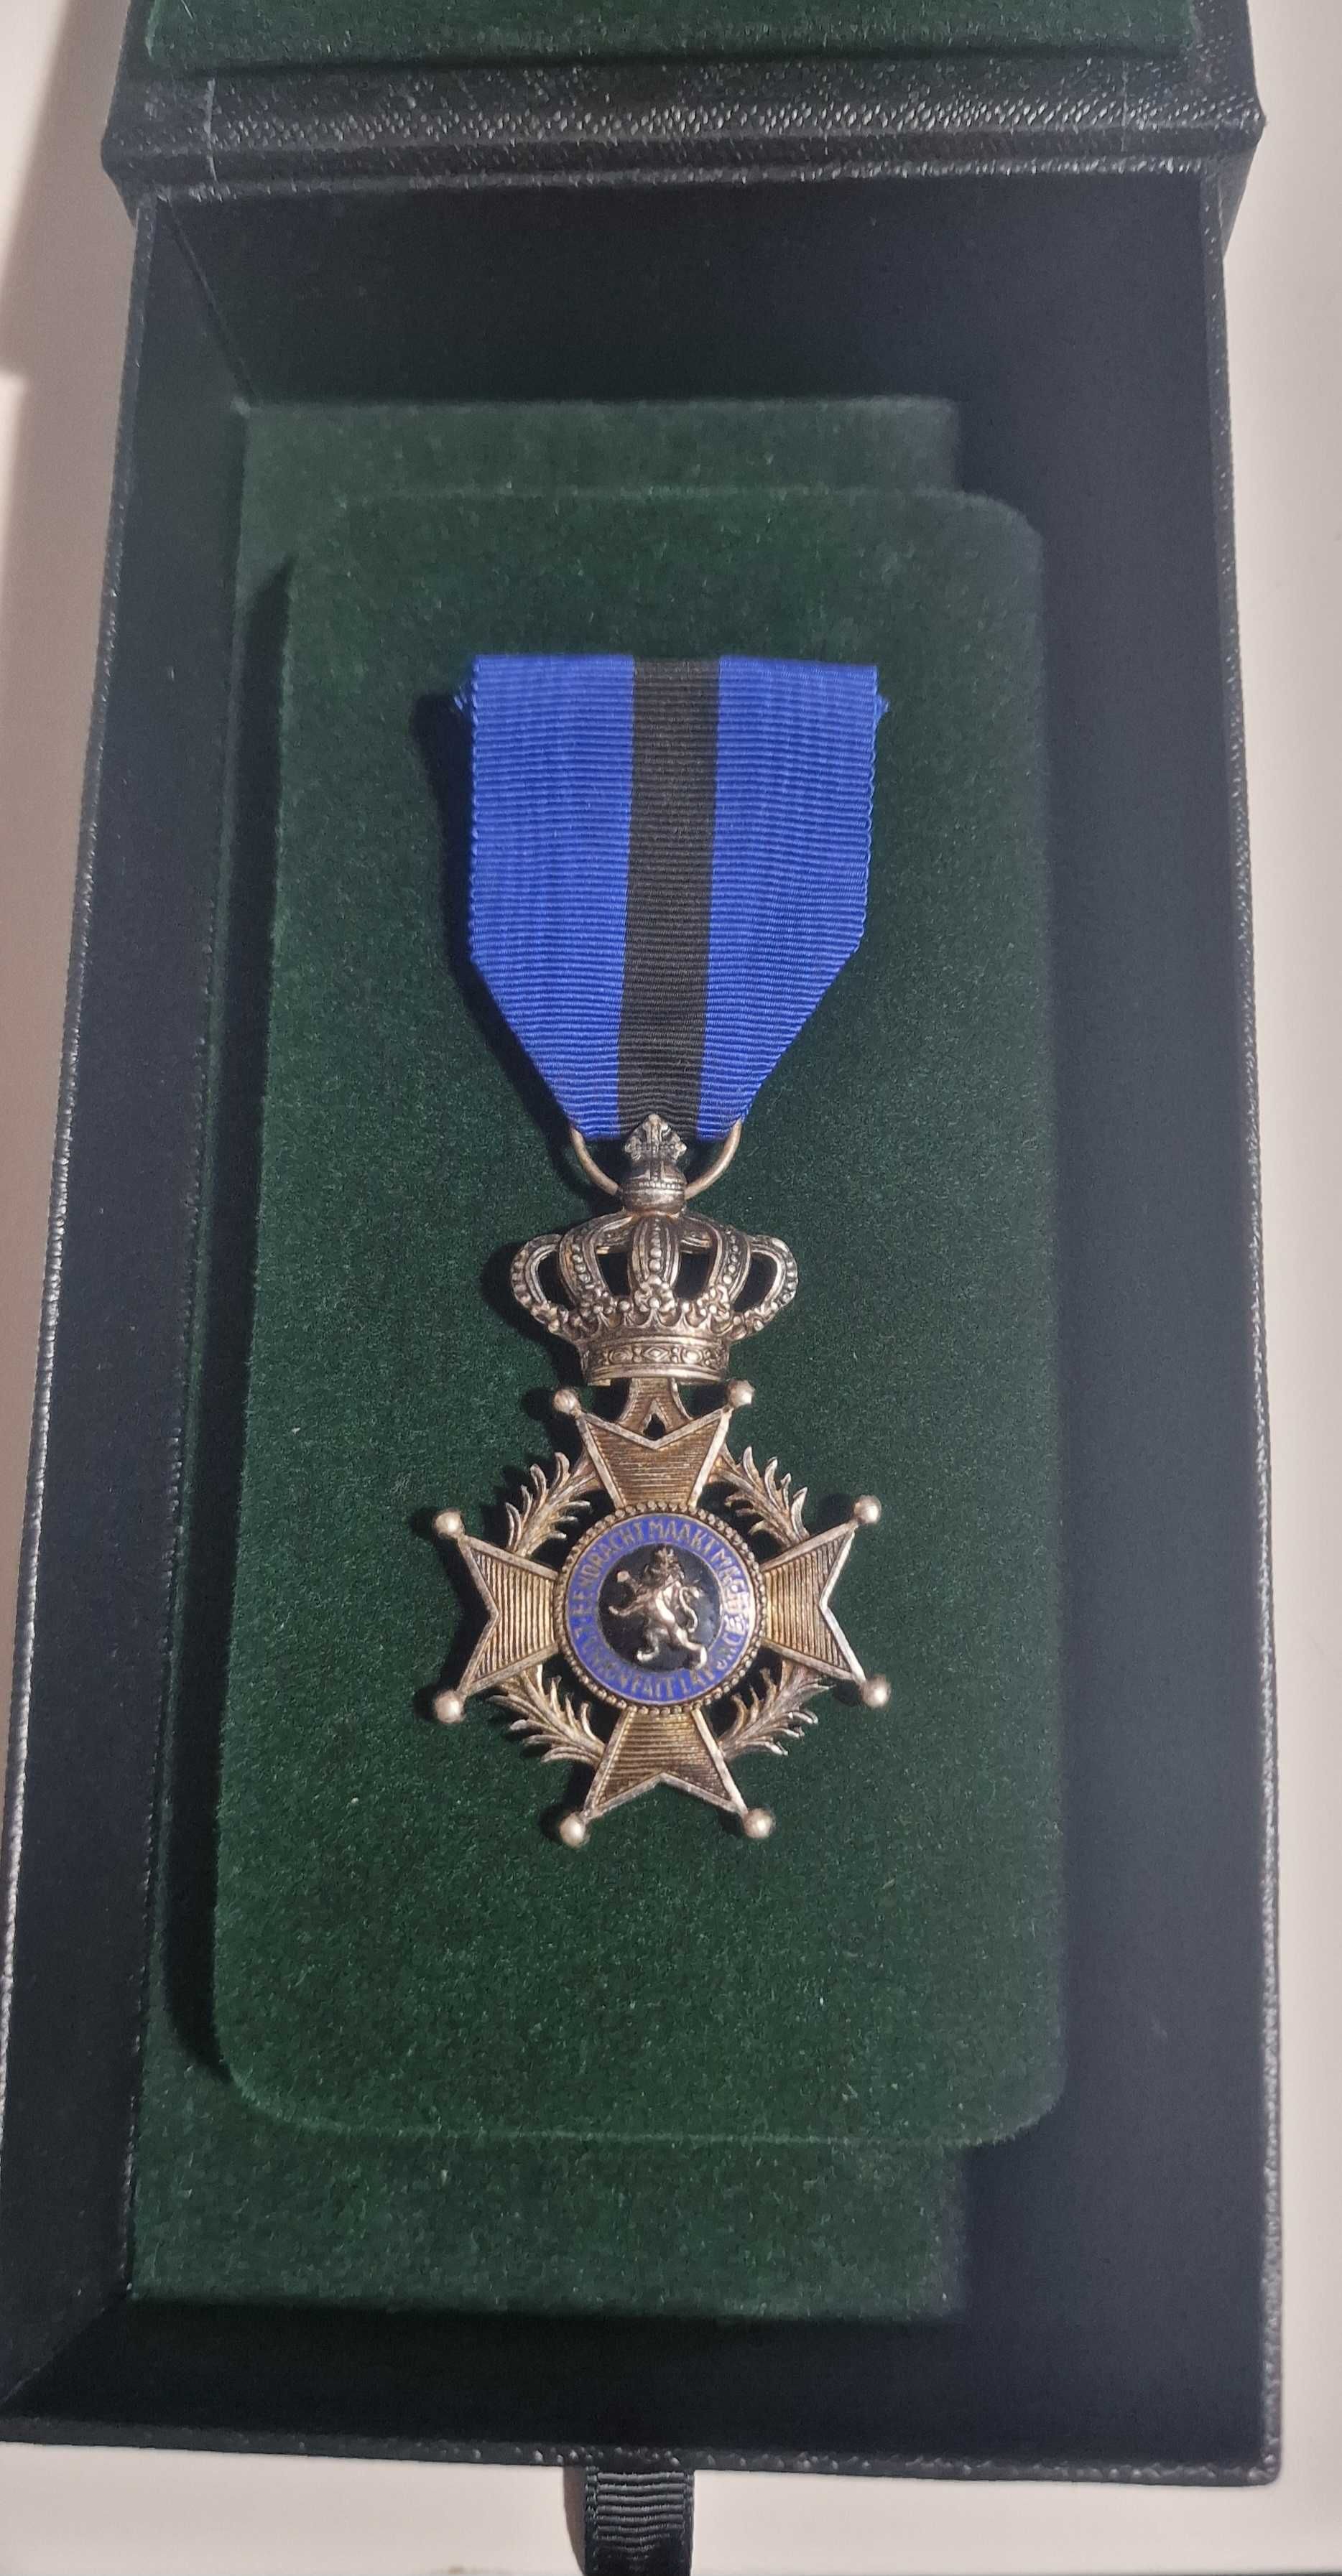 Ordinul Lui Leopold AL II-LEA. Grad De Cavaler . Argint